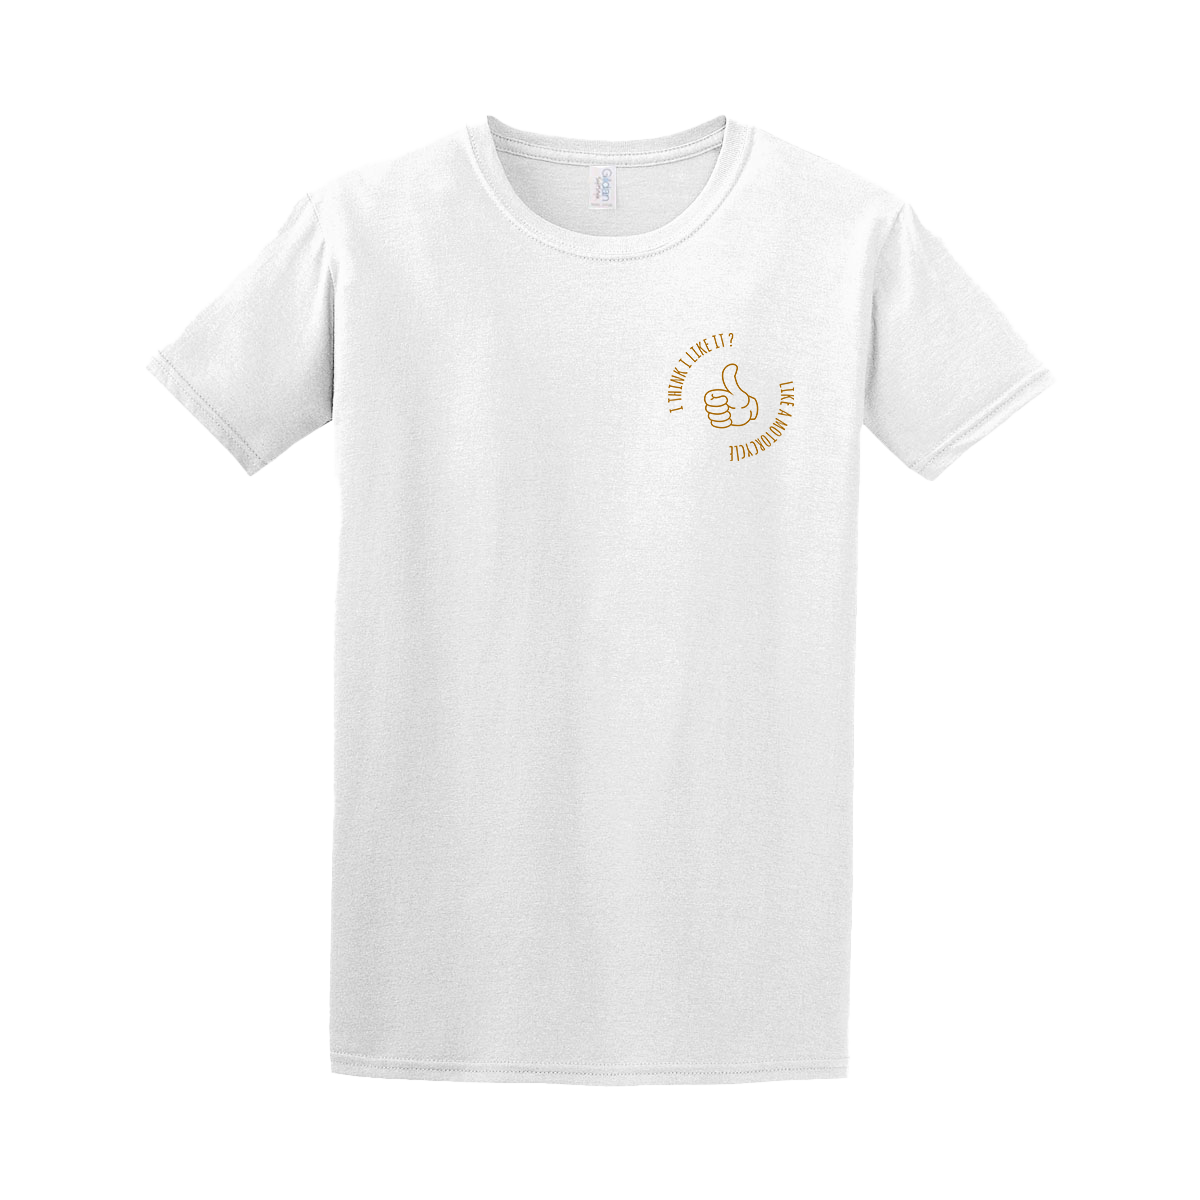 I Think I Like It? - White T-Shirt